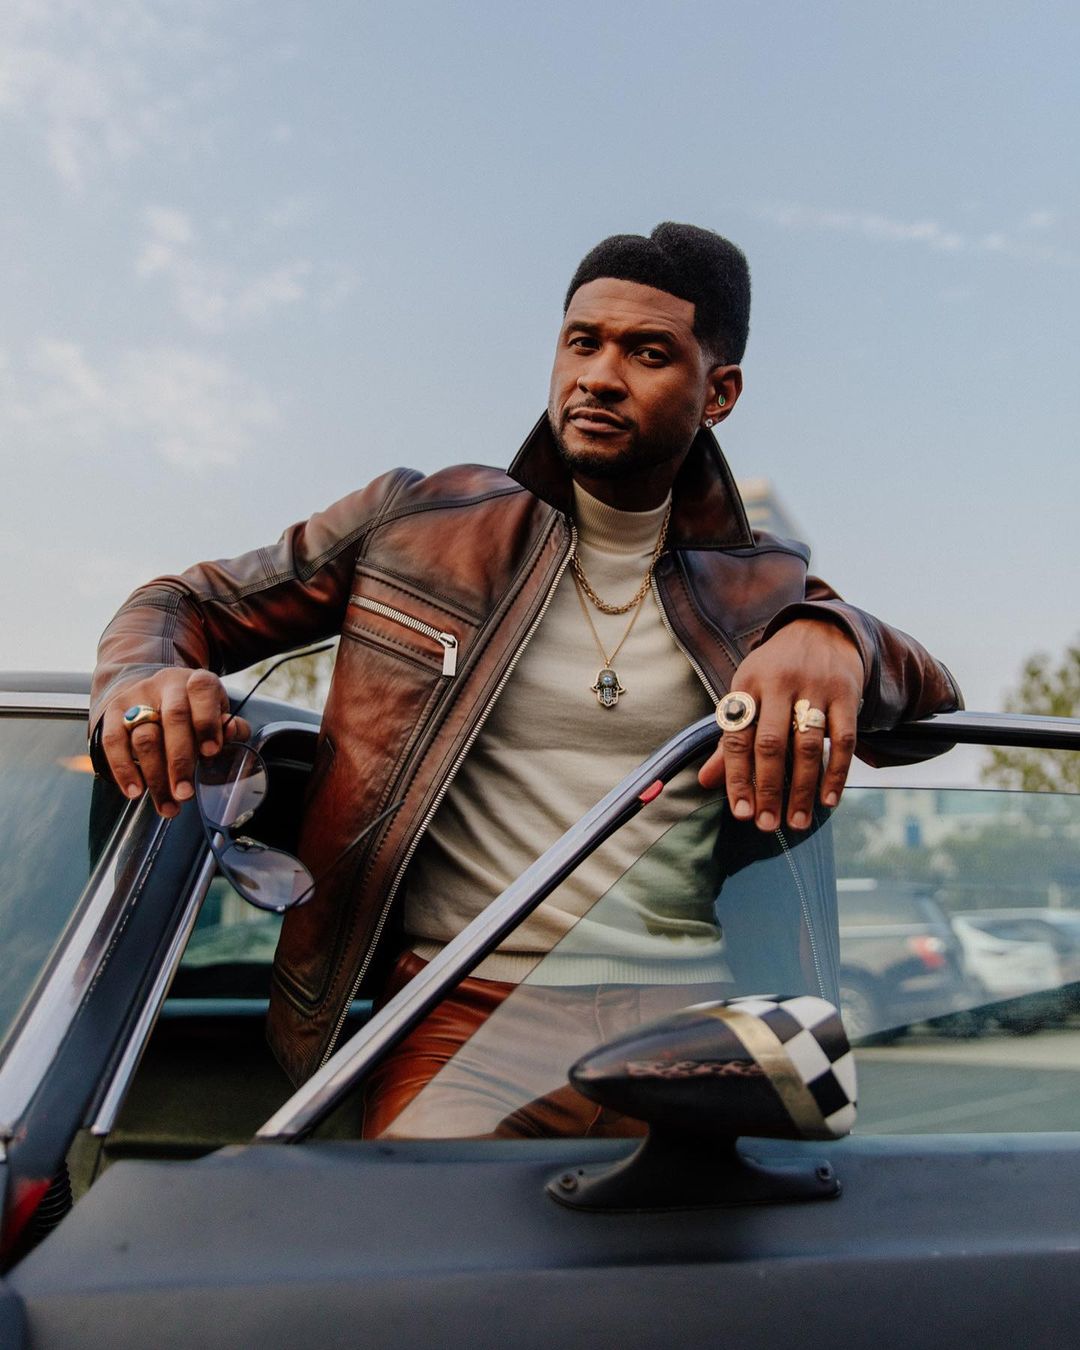 Usher (musician)